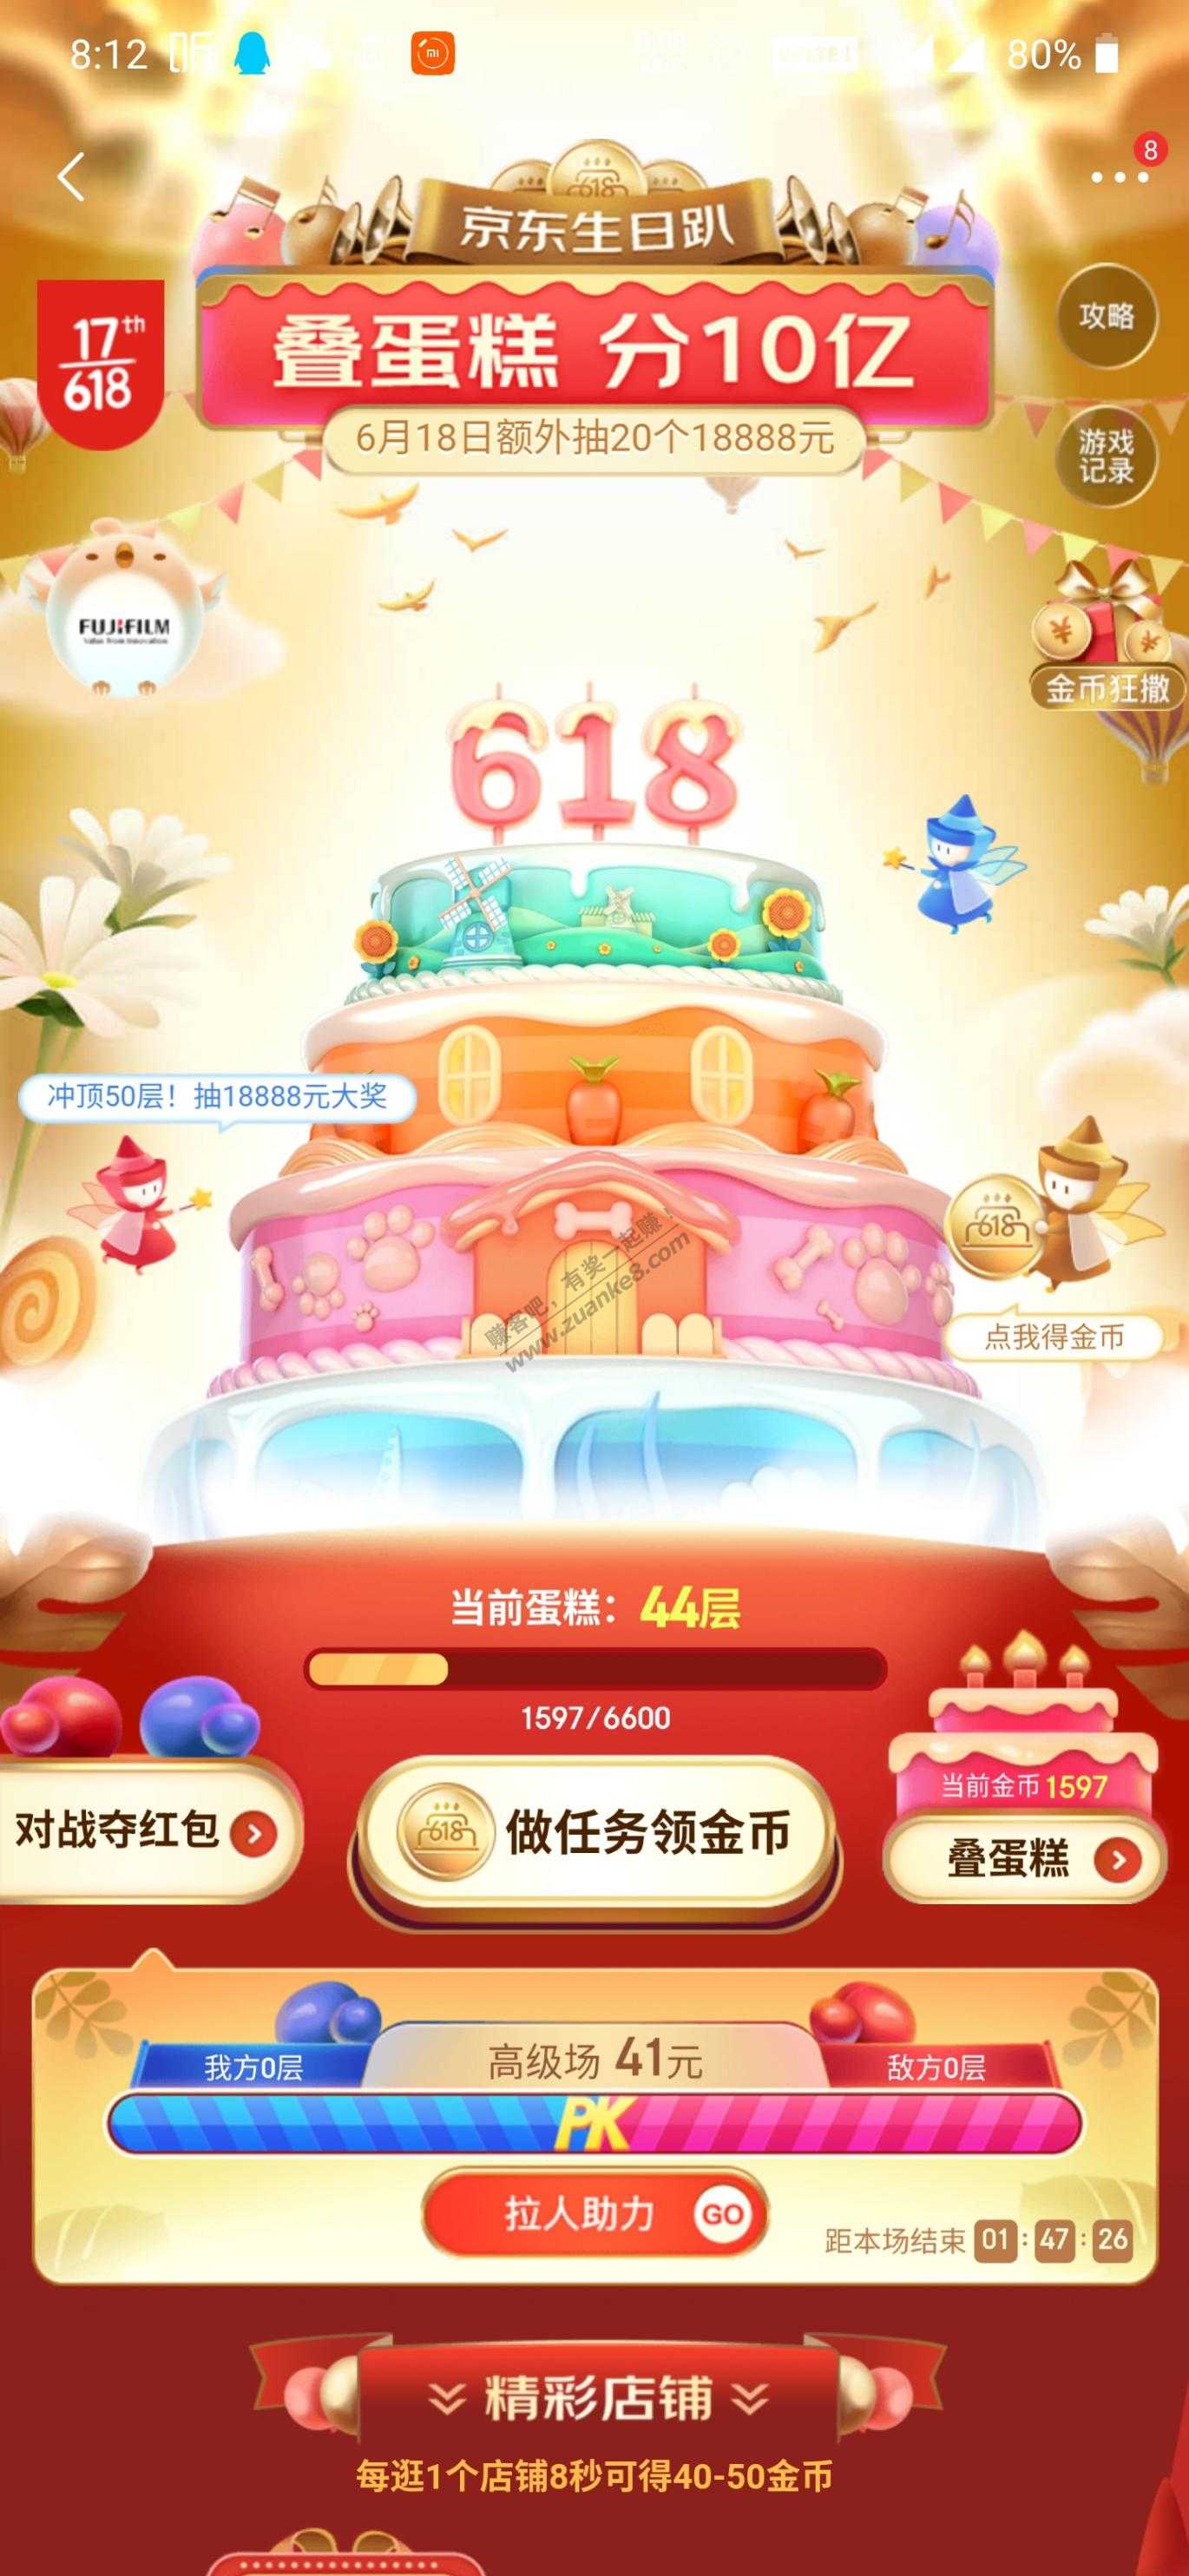 蛋糕碰到对手了-惠小助(52huixz.com)